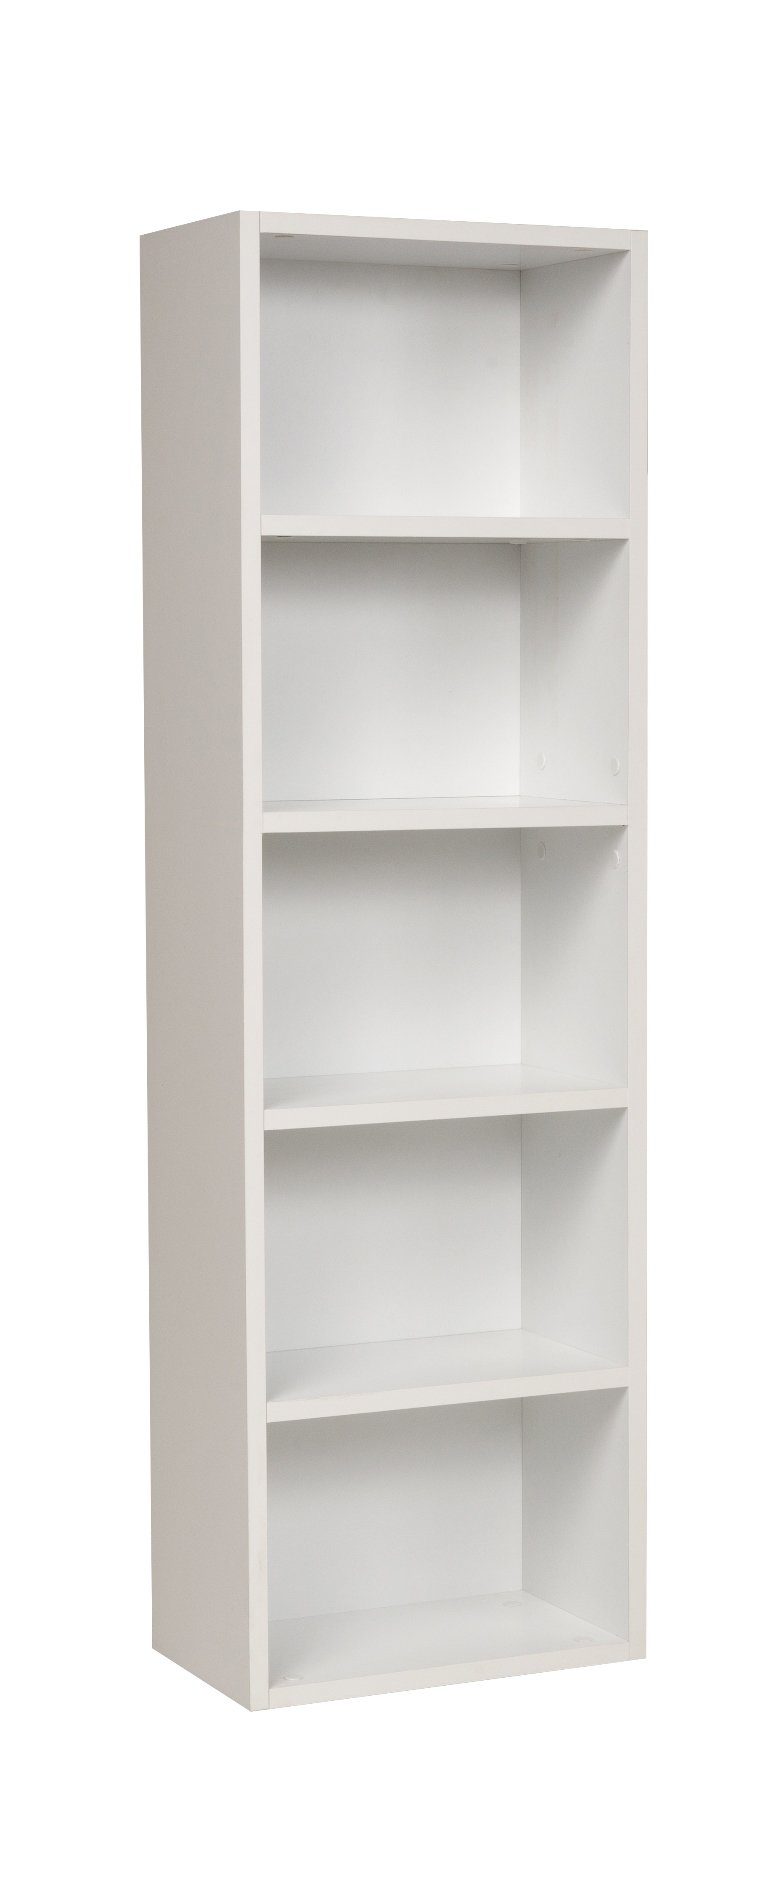 Furni24 Bücherregal Bücherregal mit 5 Fächern, weiß, 40x24x132 cm